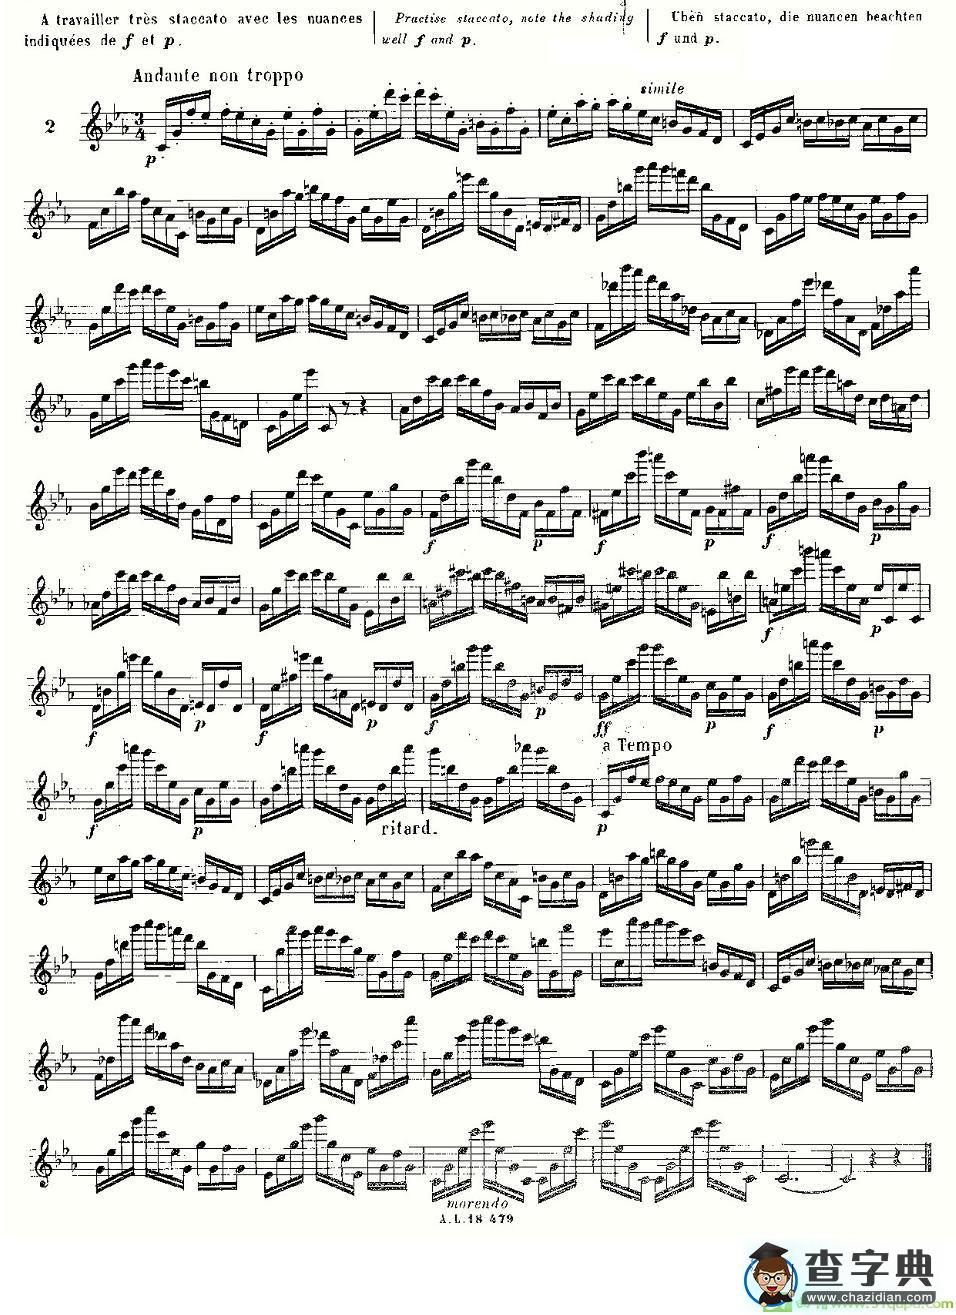 基于维尼亚夫斯基练习曲的10首长笛练习曲之2长笛谱(伊斯Moyse作曲)